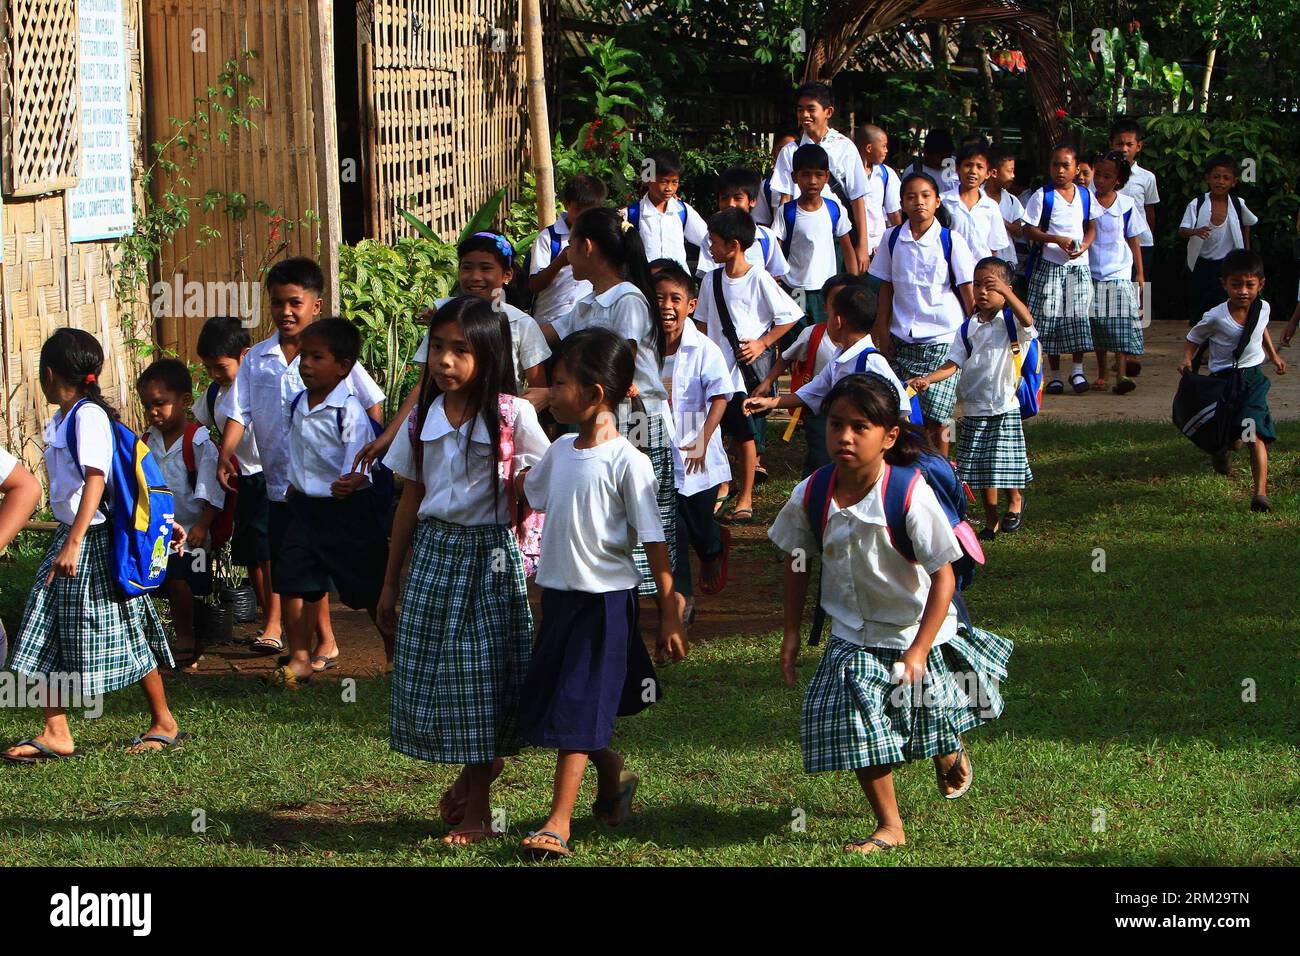 Bildnummer: 59753917 Datum: 03.06.2013 Copyright: imago/Xinhua (130603) -- PROVINCIA DI RIZAL, 3 giugno 2013 (Xinhua) -- gli studenti frequentano il primo giorno di un nuovo semestre in un'area remota nella provincia di Rizal, Filippine, 3 giugno 2013. Si prevede che circa 21 milioni di studenti dell'asilo, delle scuole elementari e superiori si raduneranno nelle scuole pubbliche del paese lunedì, mentre le lezioni saranno aperte per l'anno scolastico 2013-2014. (Xinhua/Rouelle Umali) (bxq) FILIPPINE-PROVINCIA DI RIZAL-PRIMO GIORNO DI SCUOLA PUBLICATIONxNOTxINxCHN Gesellschaft Einschulung Erster Schultag kurios Kind Schulkind Erstklaessler Schule Armut Foto Stock